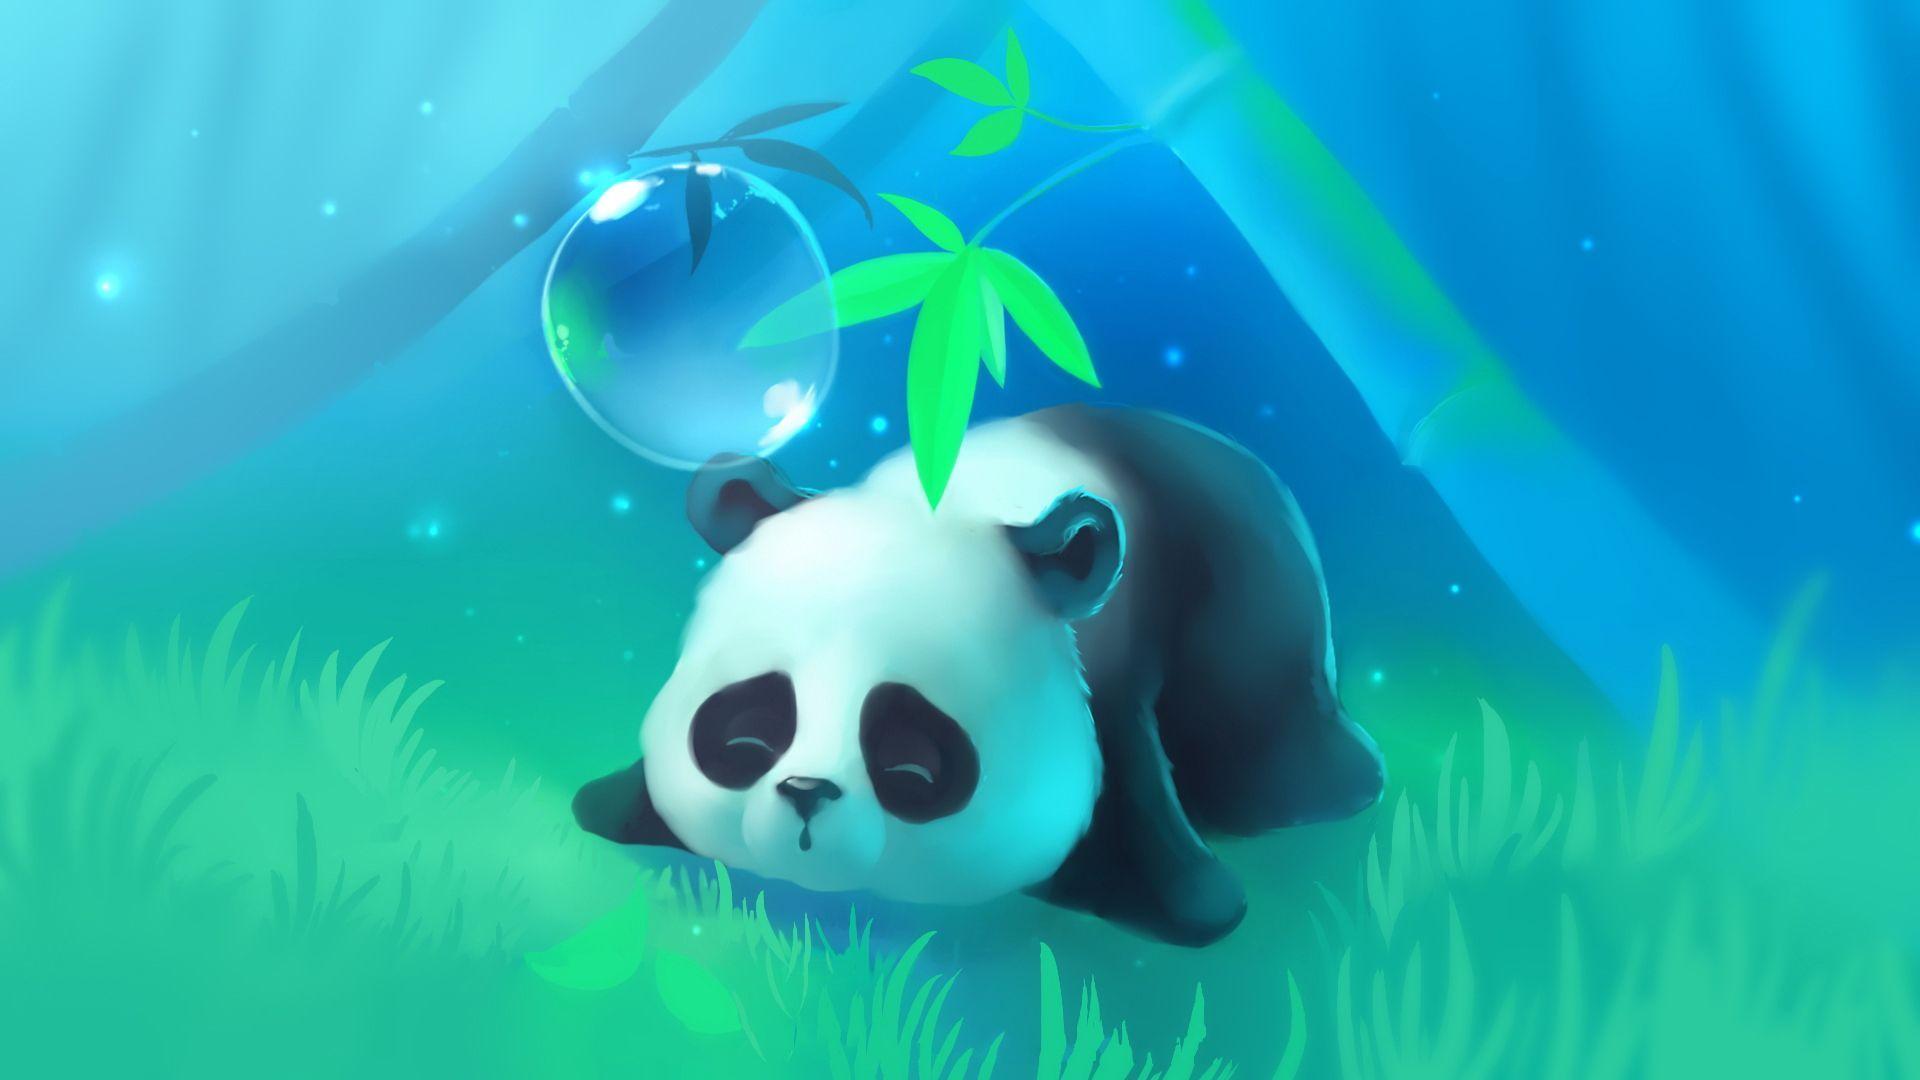 Cute Panda Desktop Wallpaper .wallpaperaccess.com